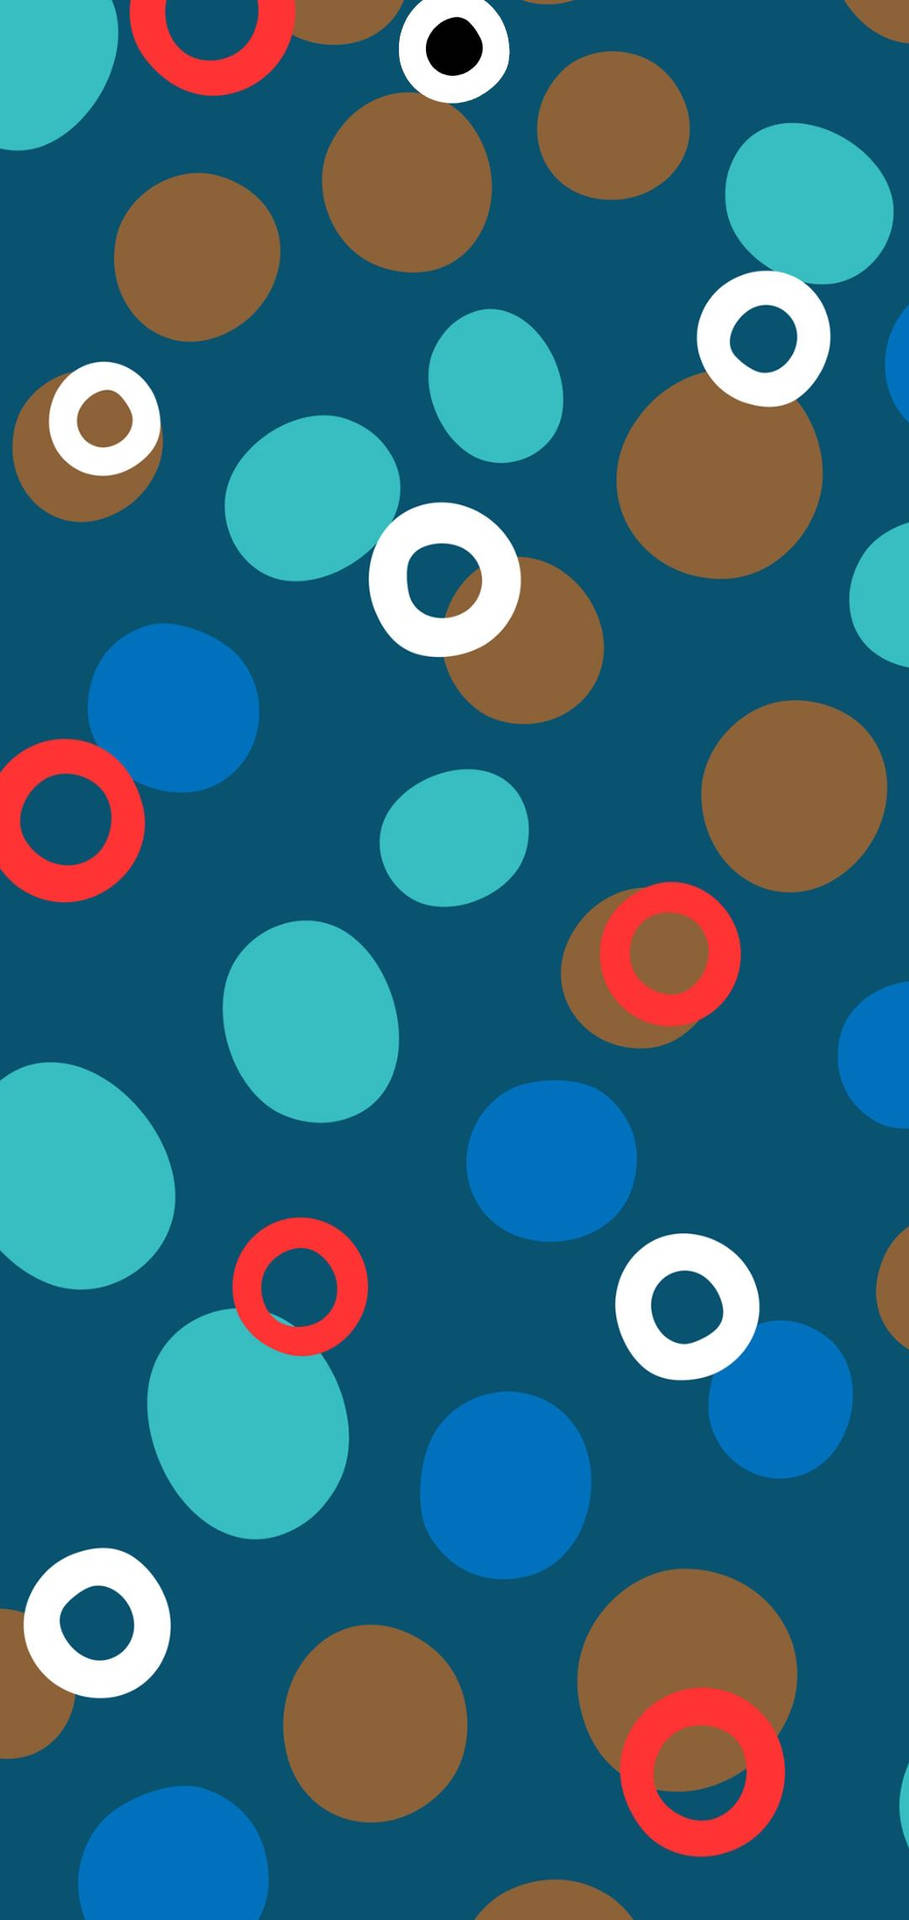 Colorful Polka Dots: Những dòng chấm tròn màu sắc sẽ đem đến cho bạn những cảm giác vui vẻ và sinh động. Và không chỉ trong thời trang, chúng còn xuất hiện trong nhiều lĩnh vực khác như thiết kế đồ họa, nội thất hay sản phẩm điện tử. Hãy đến với hình ảnh để thấy sự tươi vui mà những chấm tròn này đem lại.